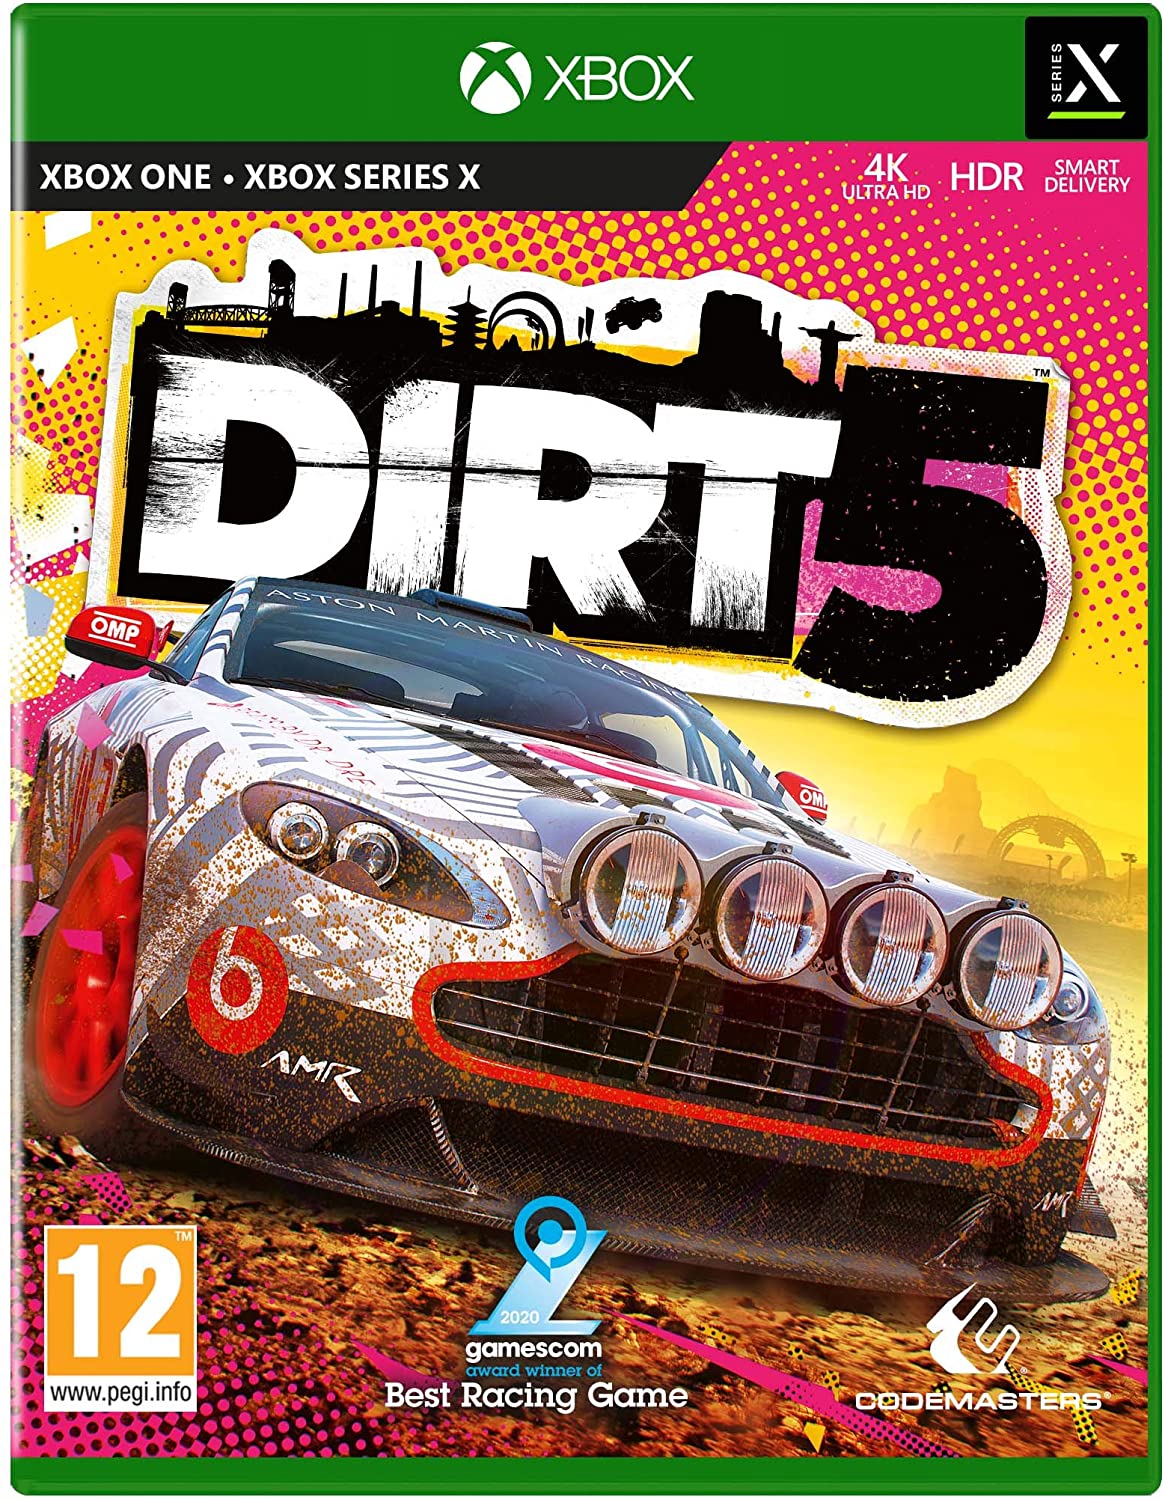 Dirt 5 - Xbox One Játékok